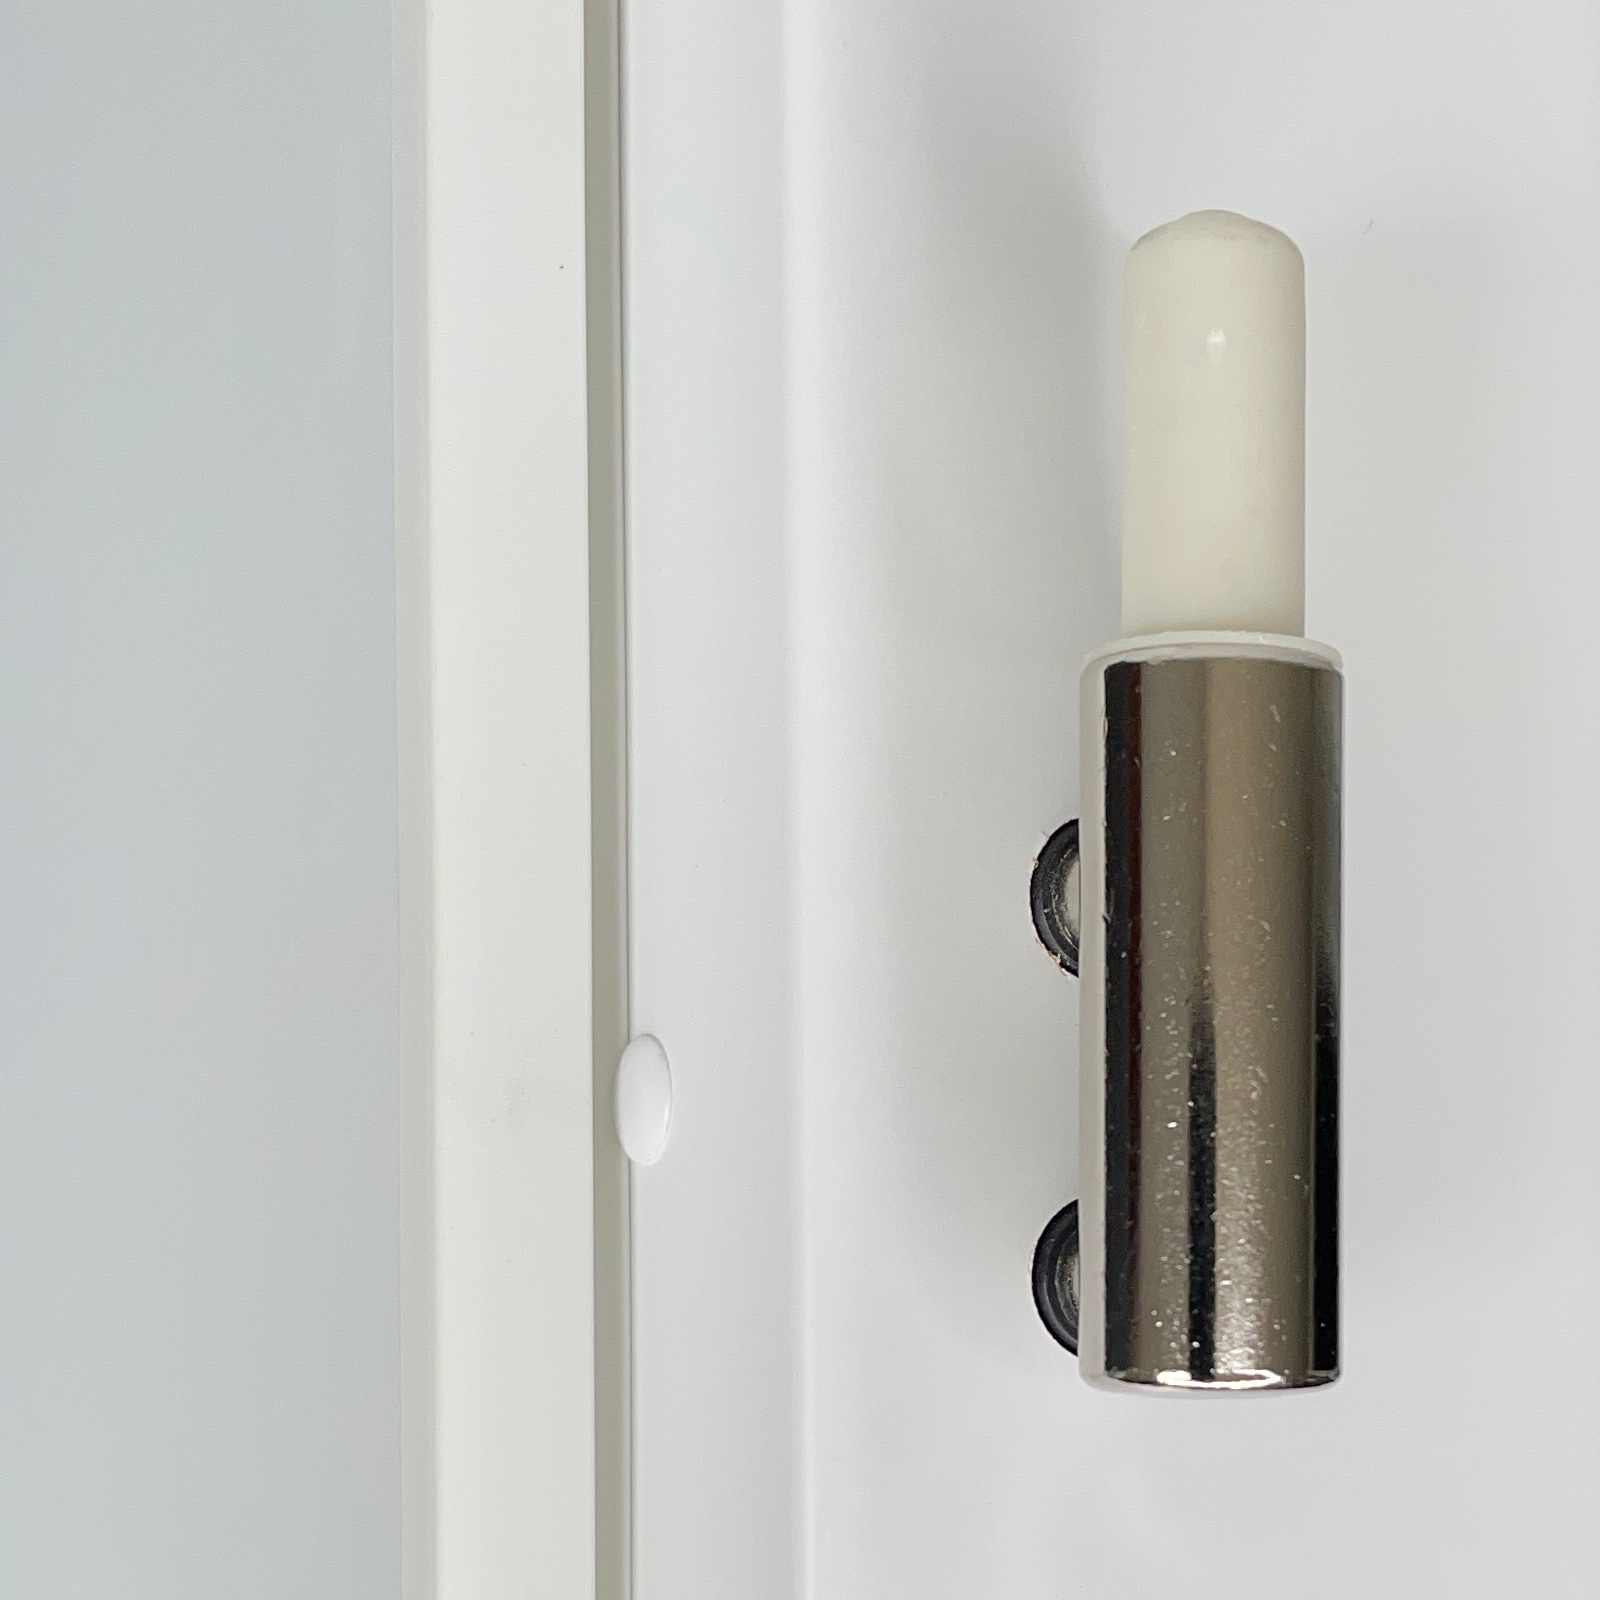 Zimmertür mit Zarge brillant-weiß Stiltür mit 1 Kassette Designkante - Modell Stiltür M13